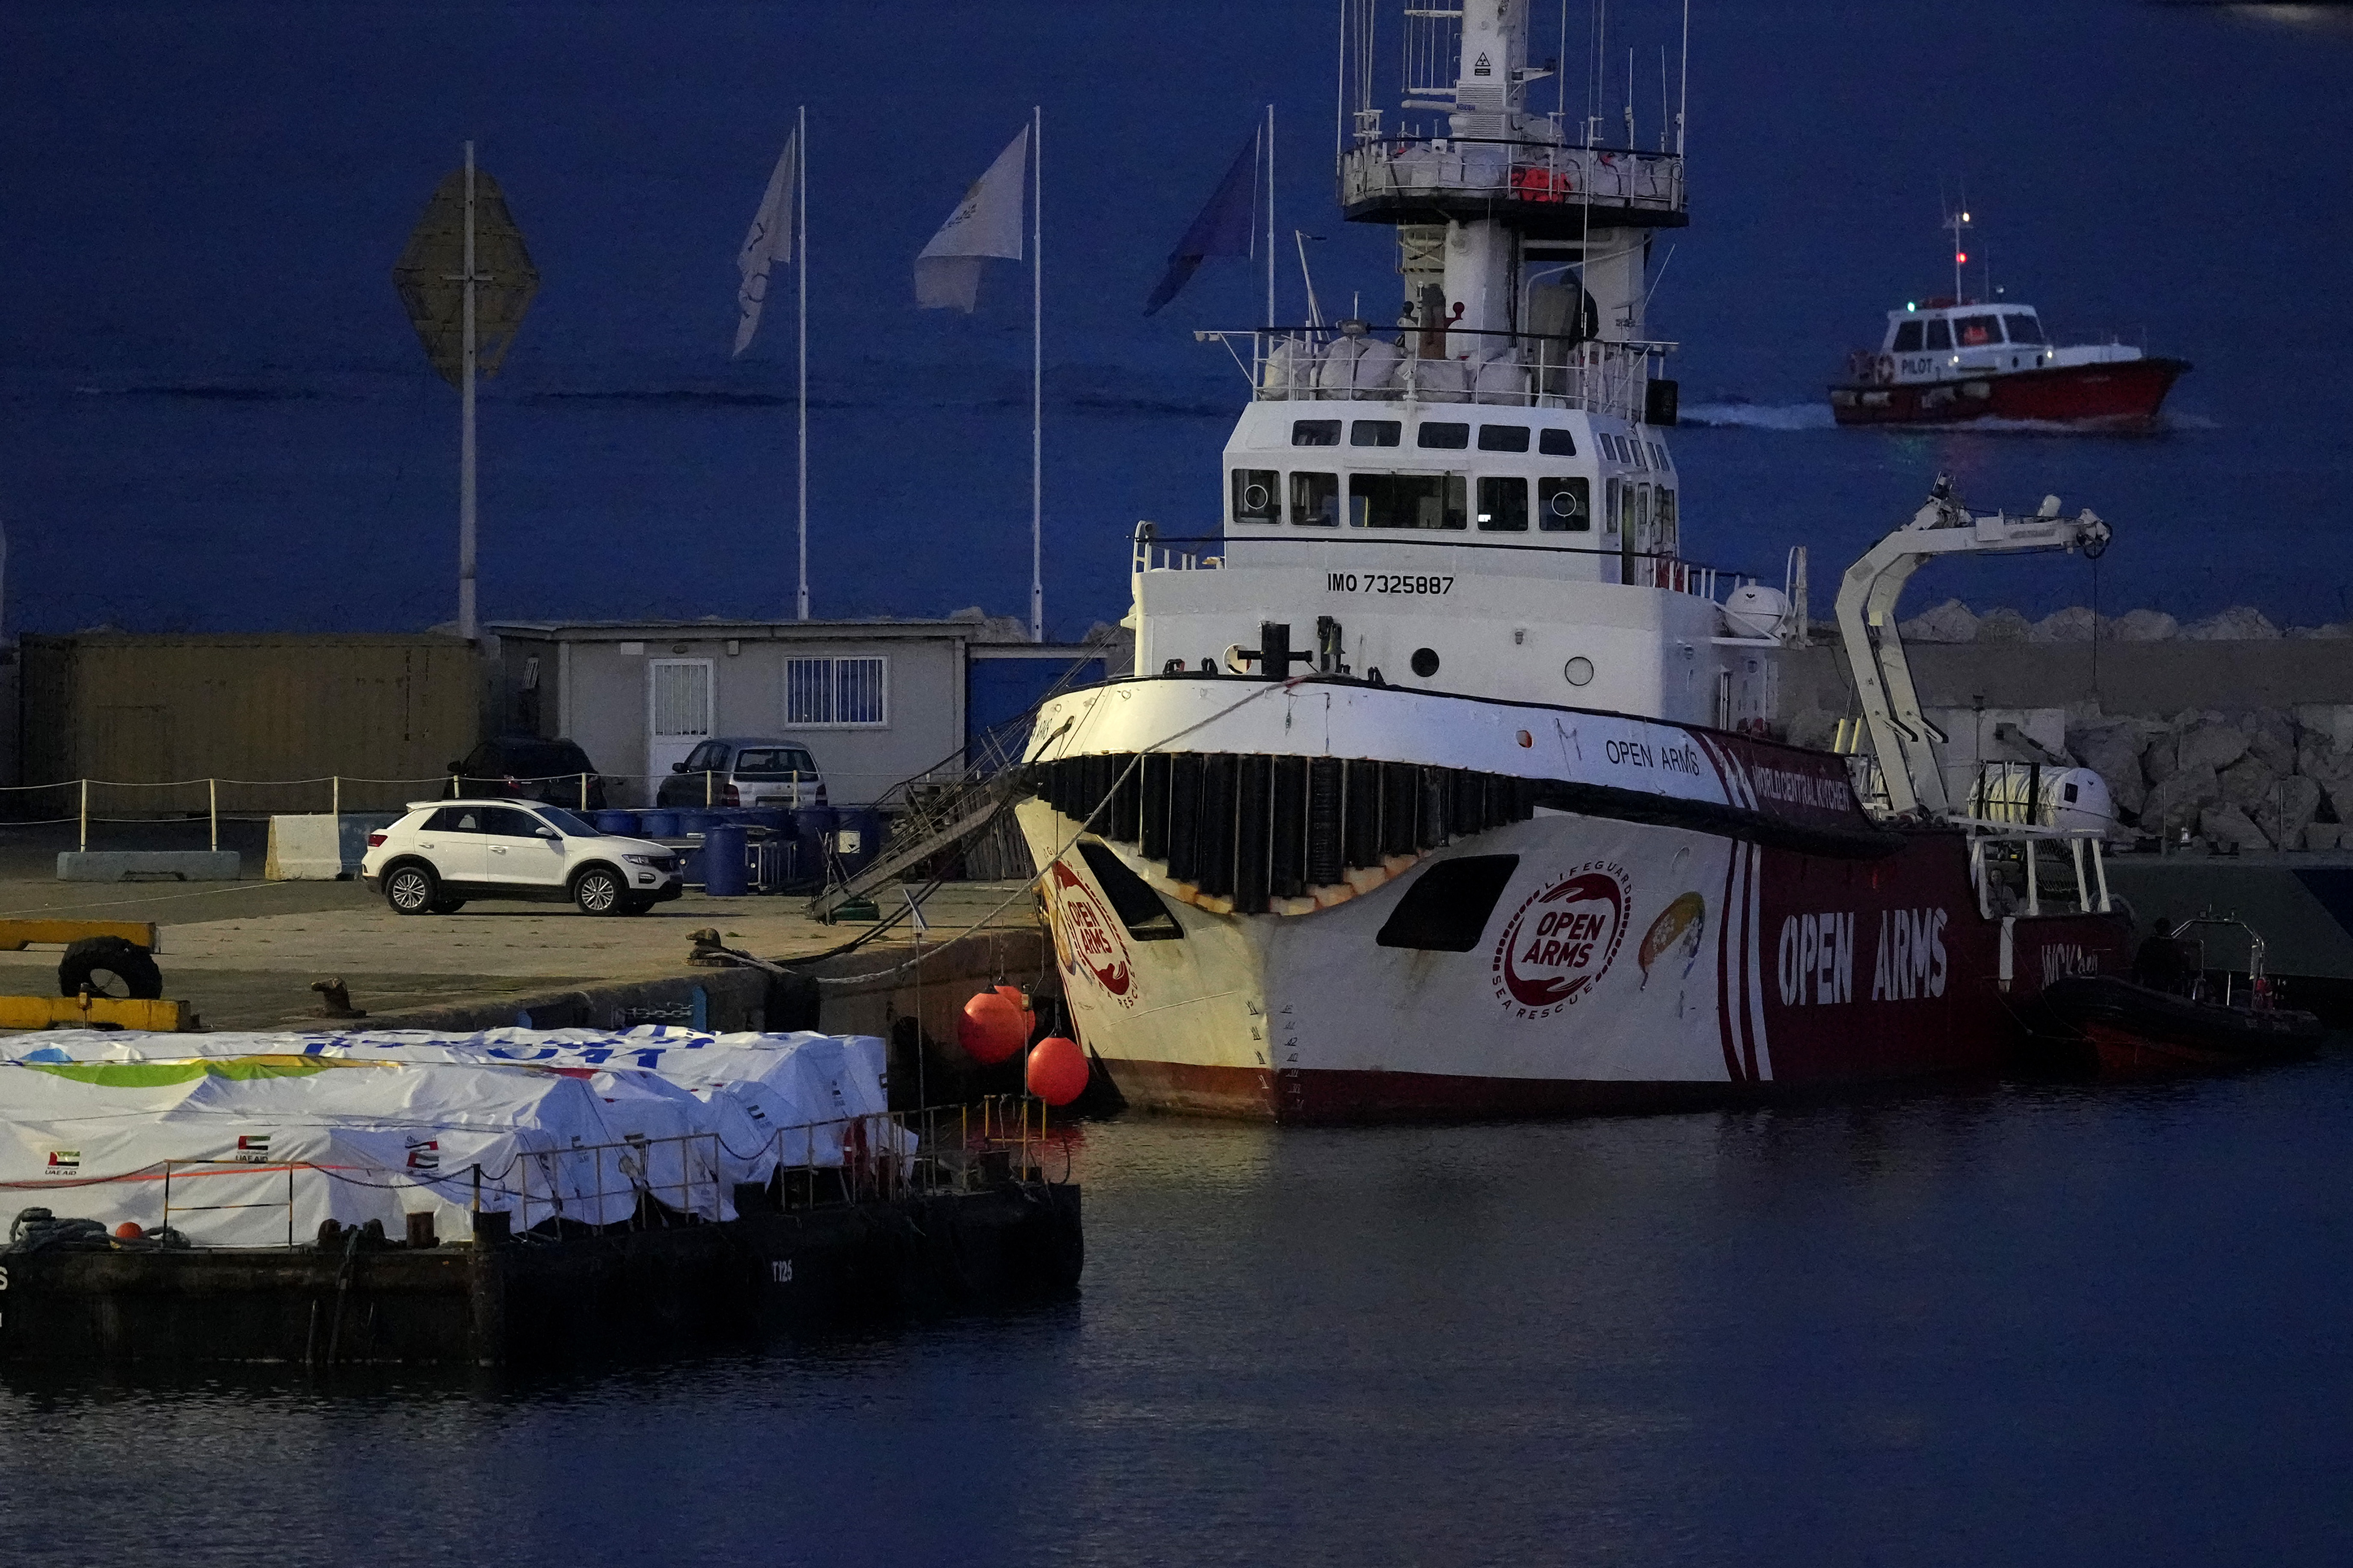 ہسپانوی امدادی گروپ اوپن آرمز سے تعلق رکھنے والا جہاز قبرص کی بندرگاہ پر اجازت کا منتظر۔۔۔۔ (Photo: AP)